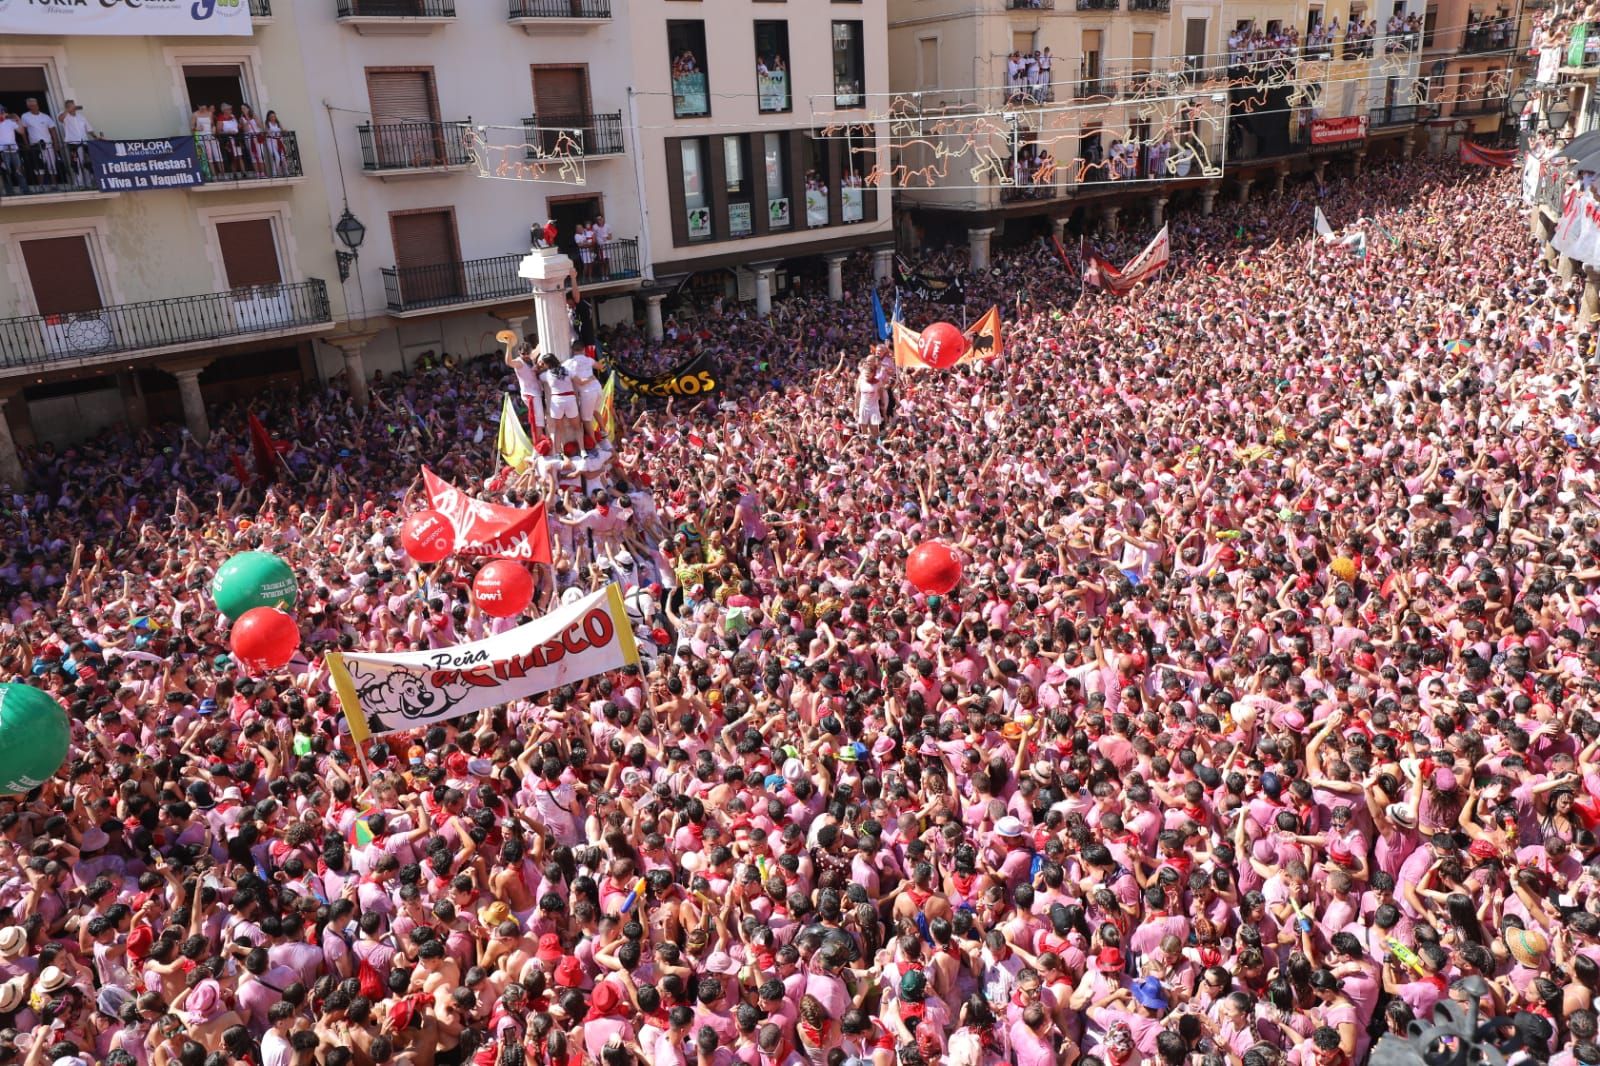 Gran ambiente en unas multitudinarias fiestas de La Vaquilla de Teruel